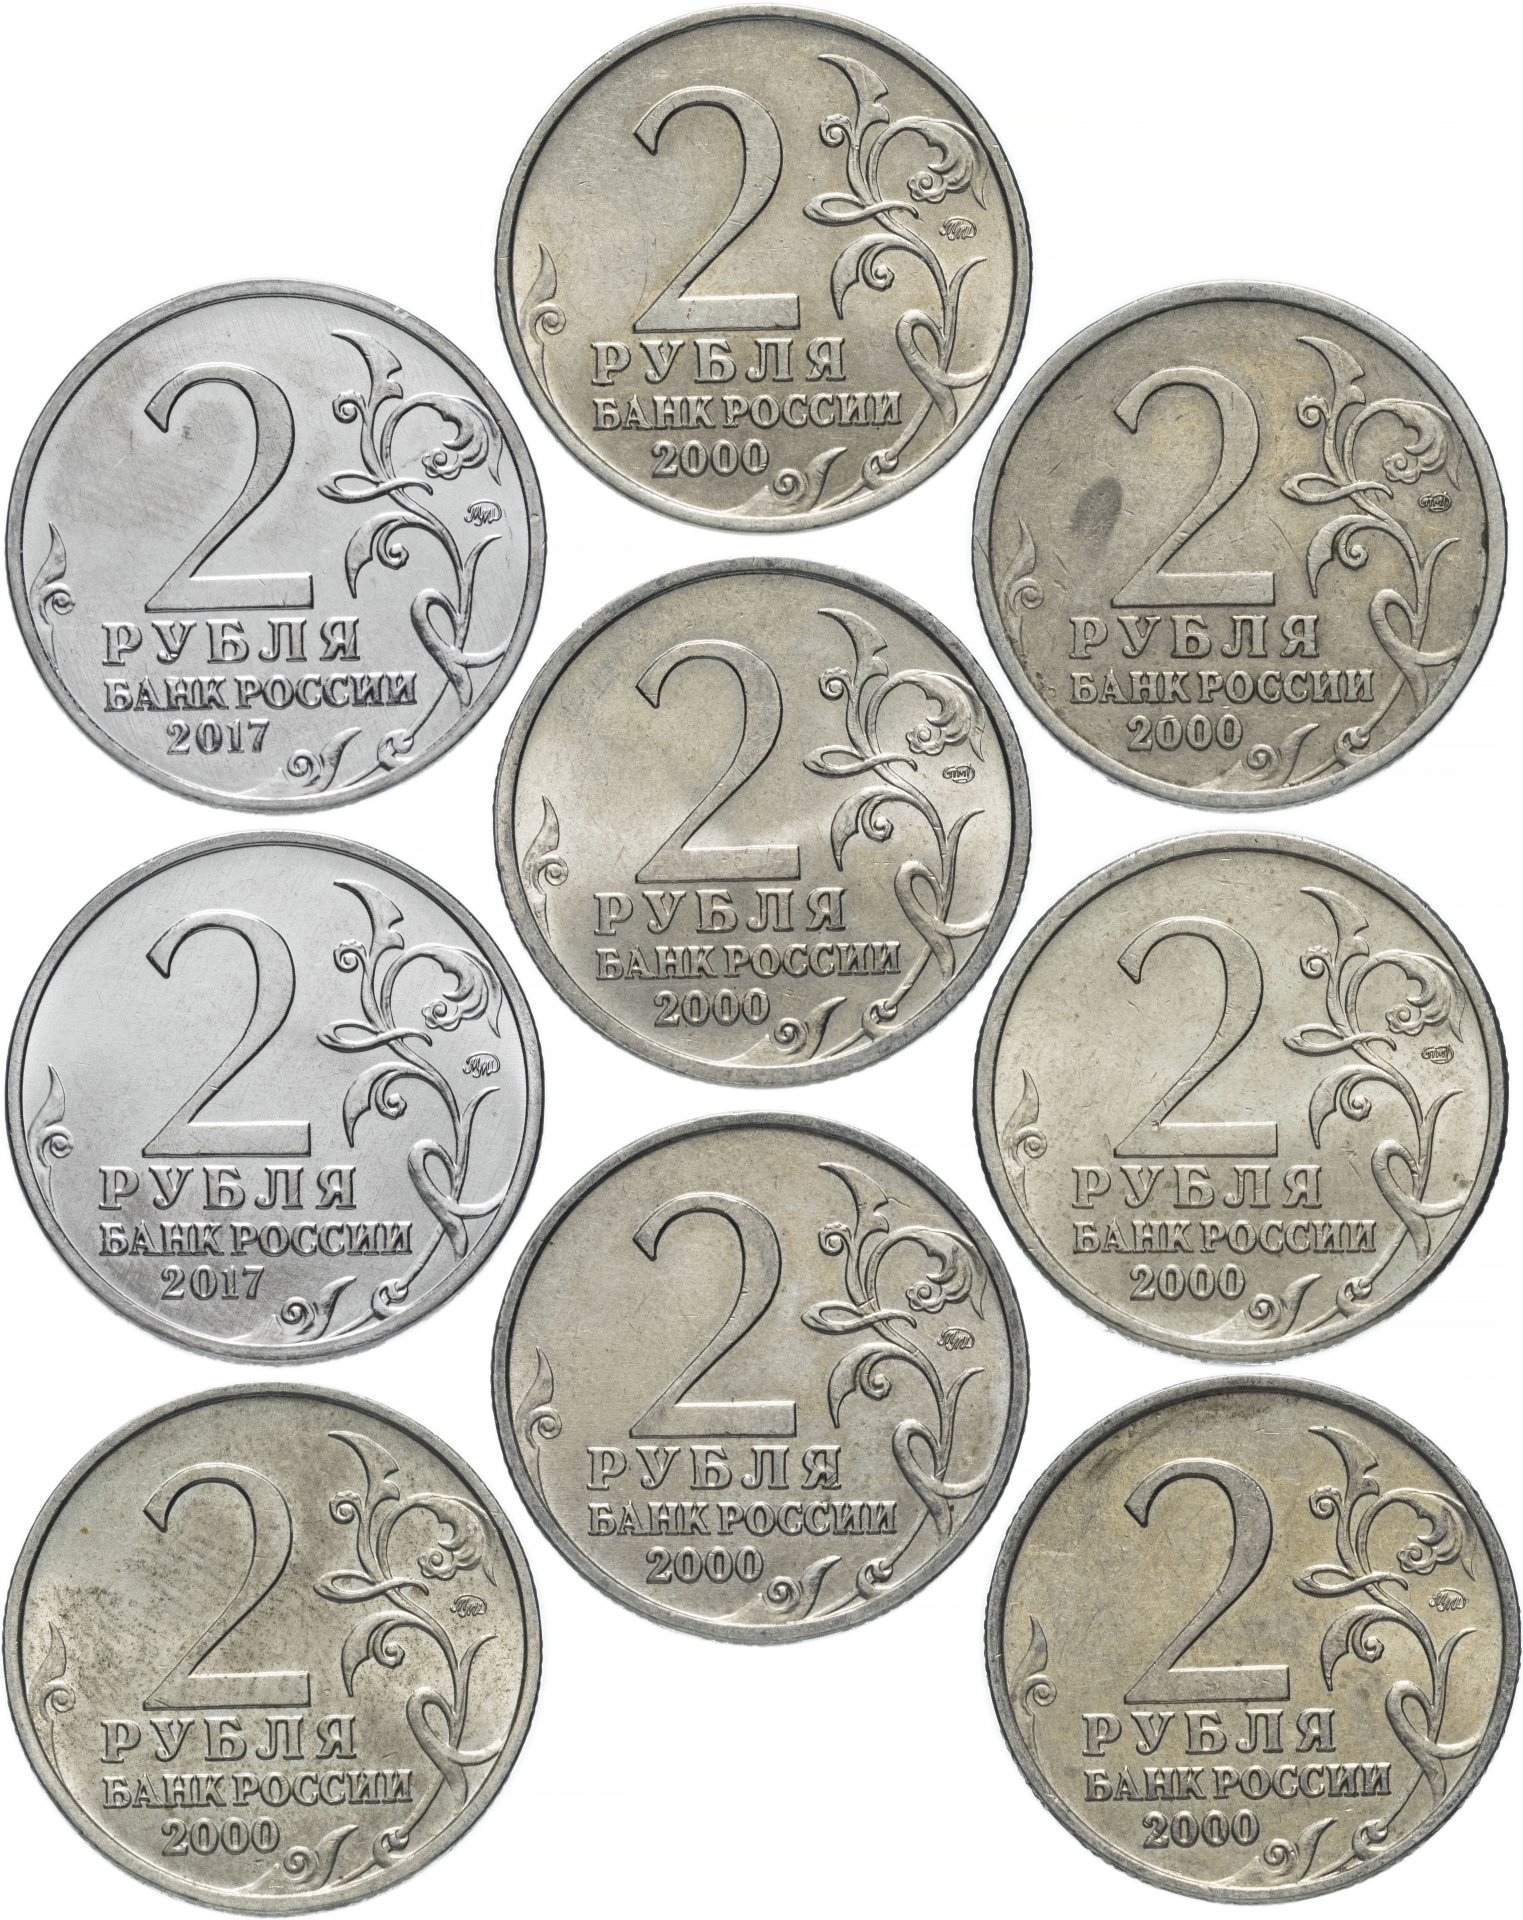 2 рубль россии. Монеты города герои 2 рубля список. Набор монет 2 рубля города герои. Коллекция 2 рублевых монет.